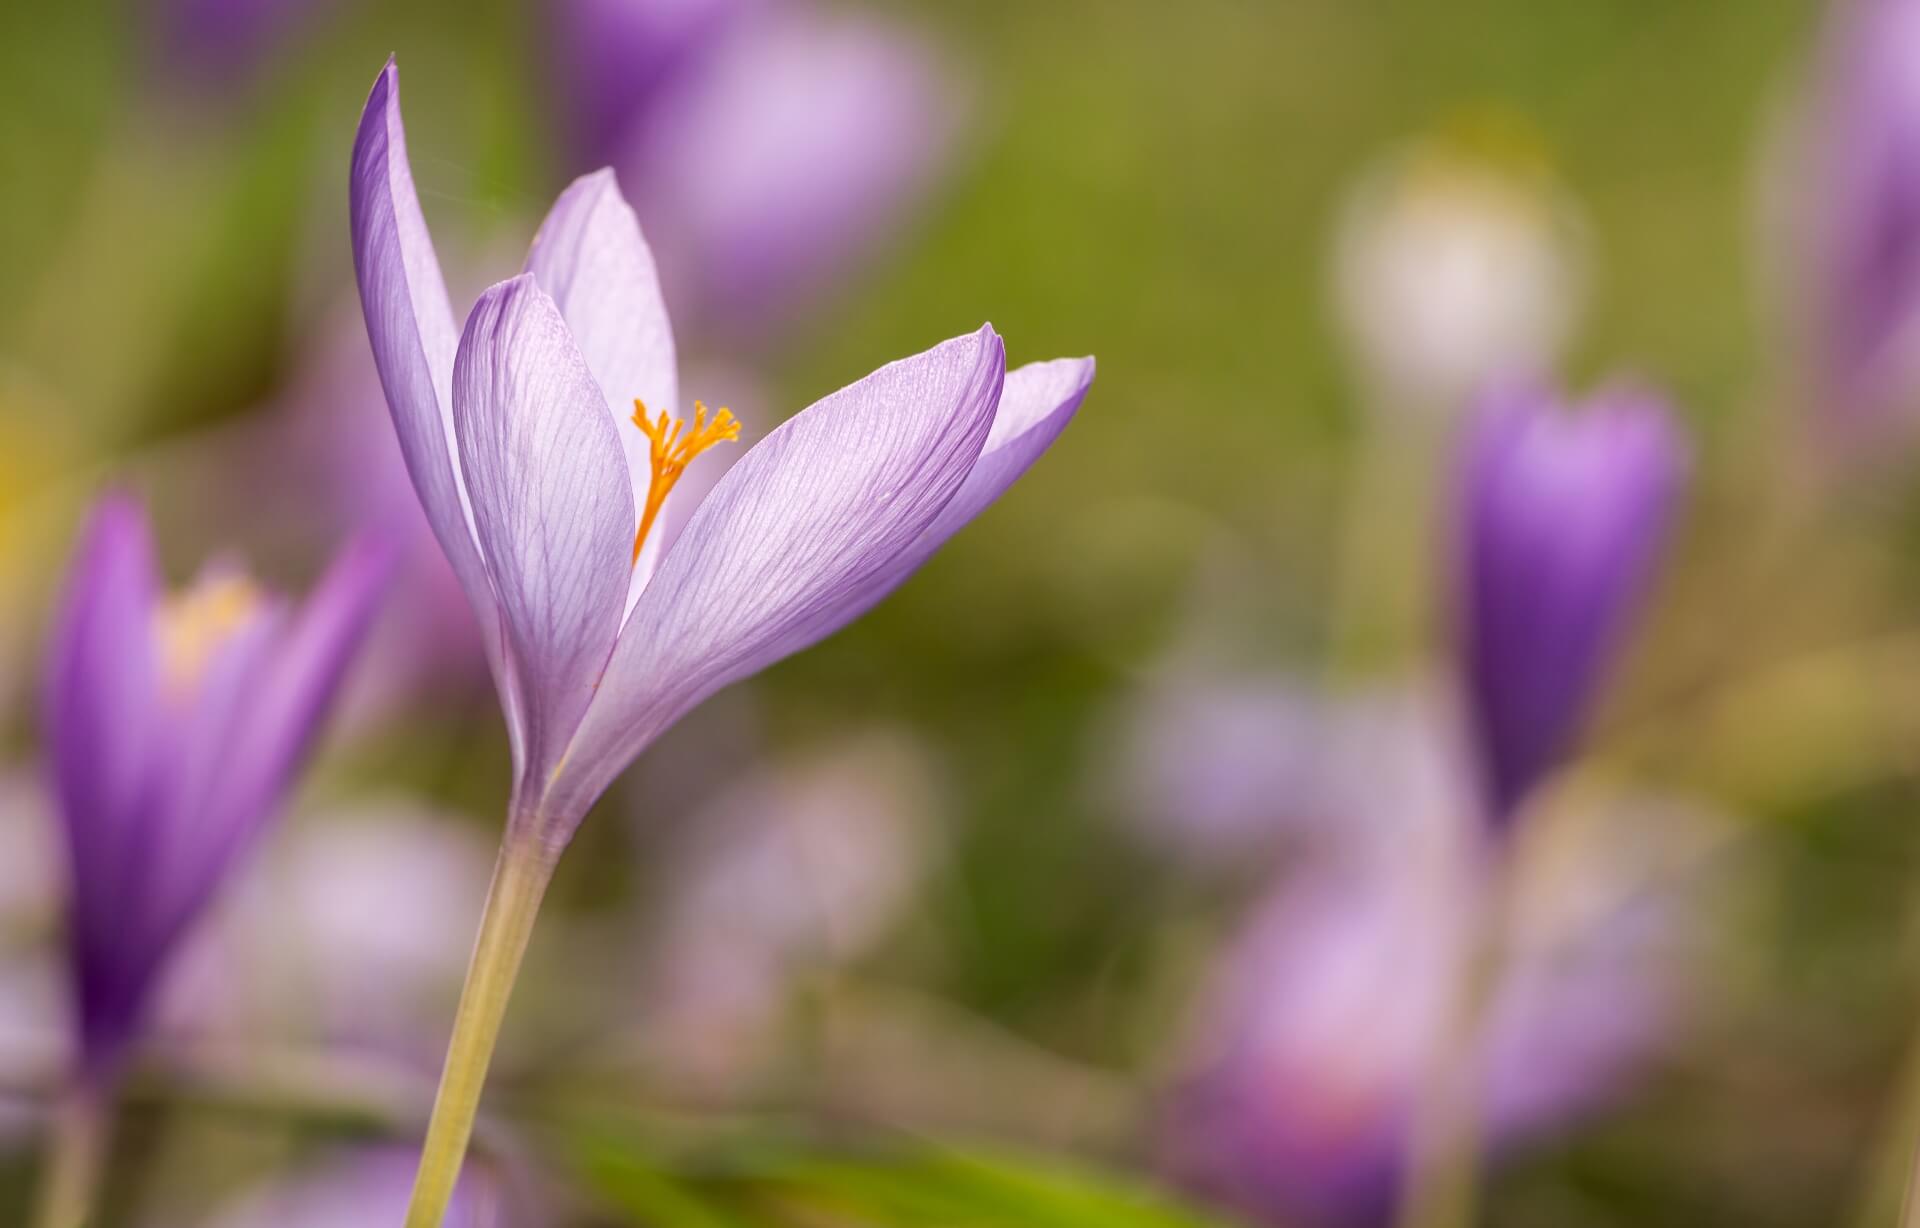 Aufnahme einer violetten Blume im Profil mit viel Hintergrundunschärfe